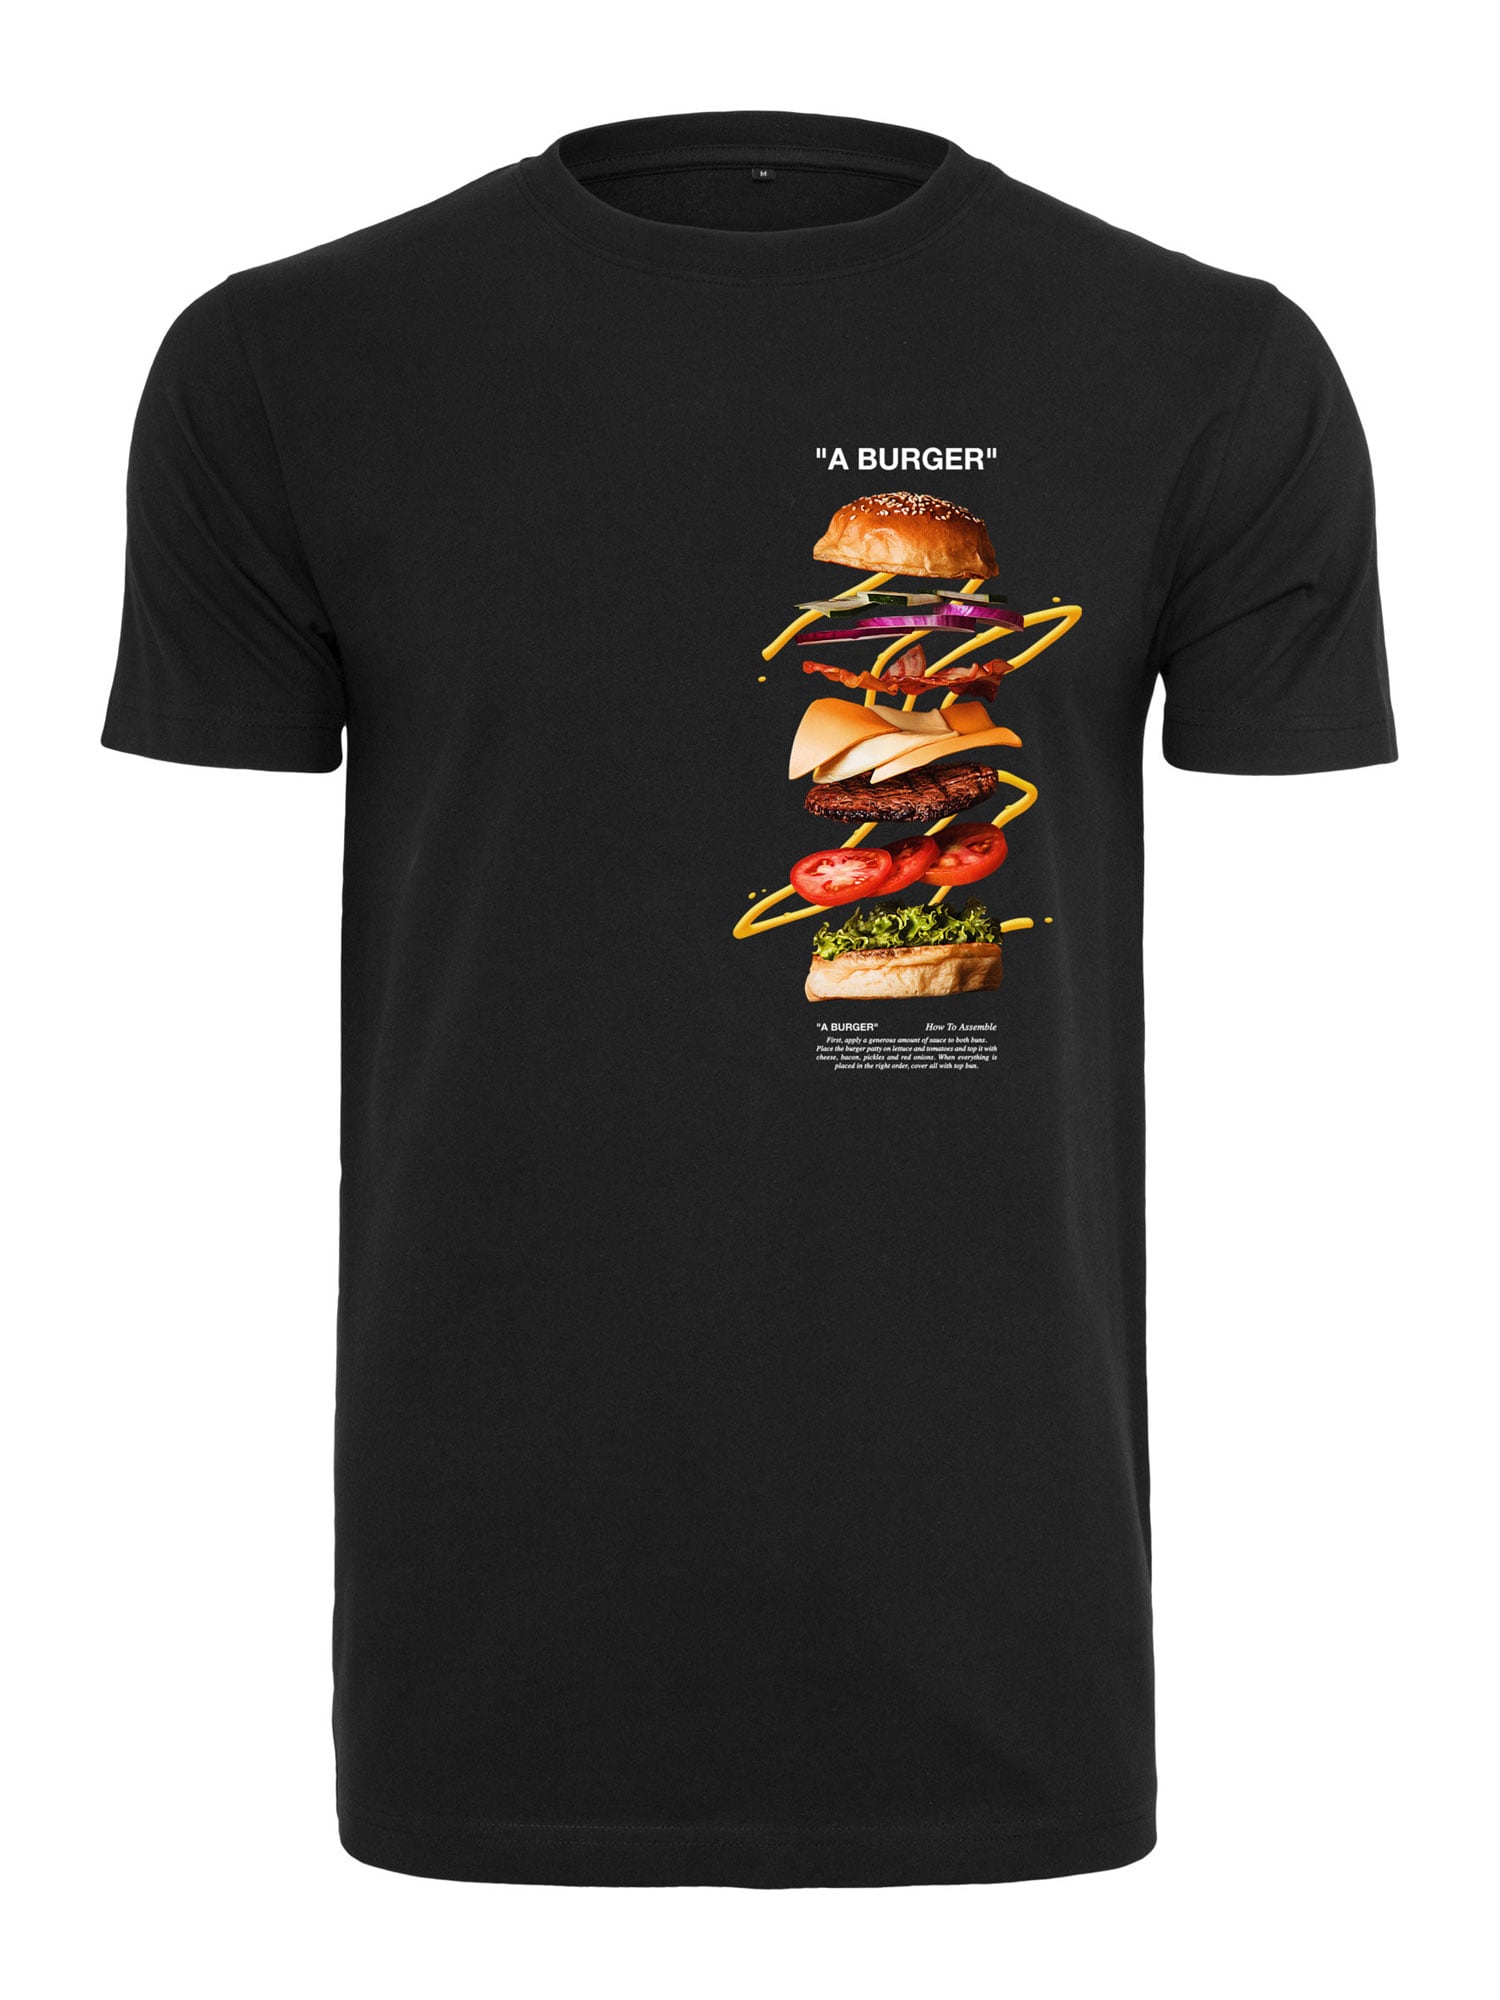 Mister Tee Marškinėliai 'A Burger' juoda / gelsvai pilka spalva / šviesiai žalia / tamsiai ruda / garstyčių spalva